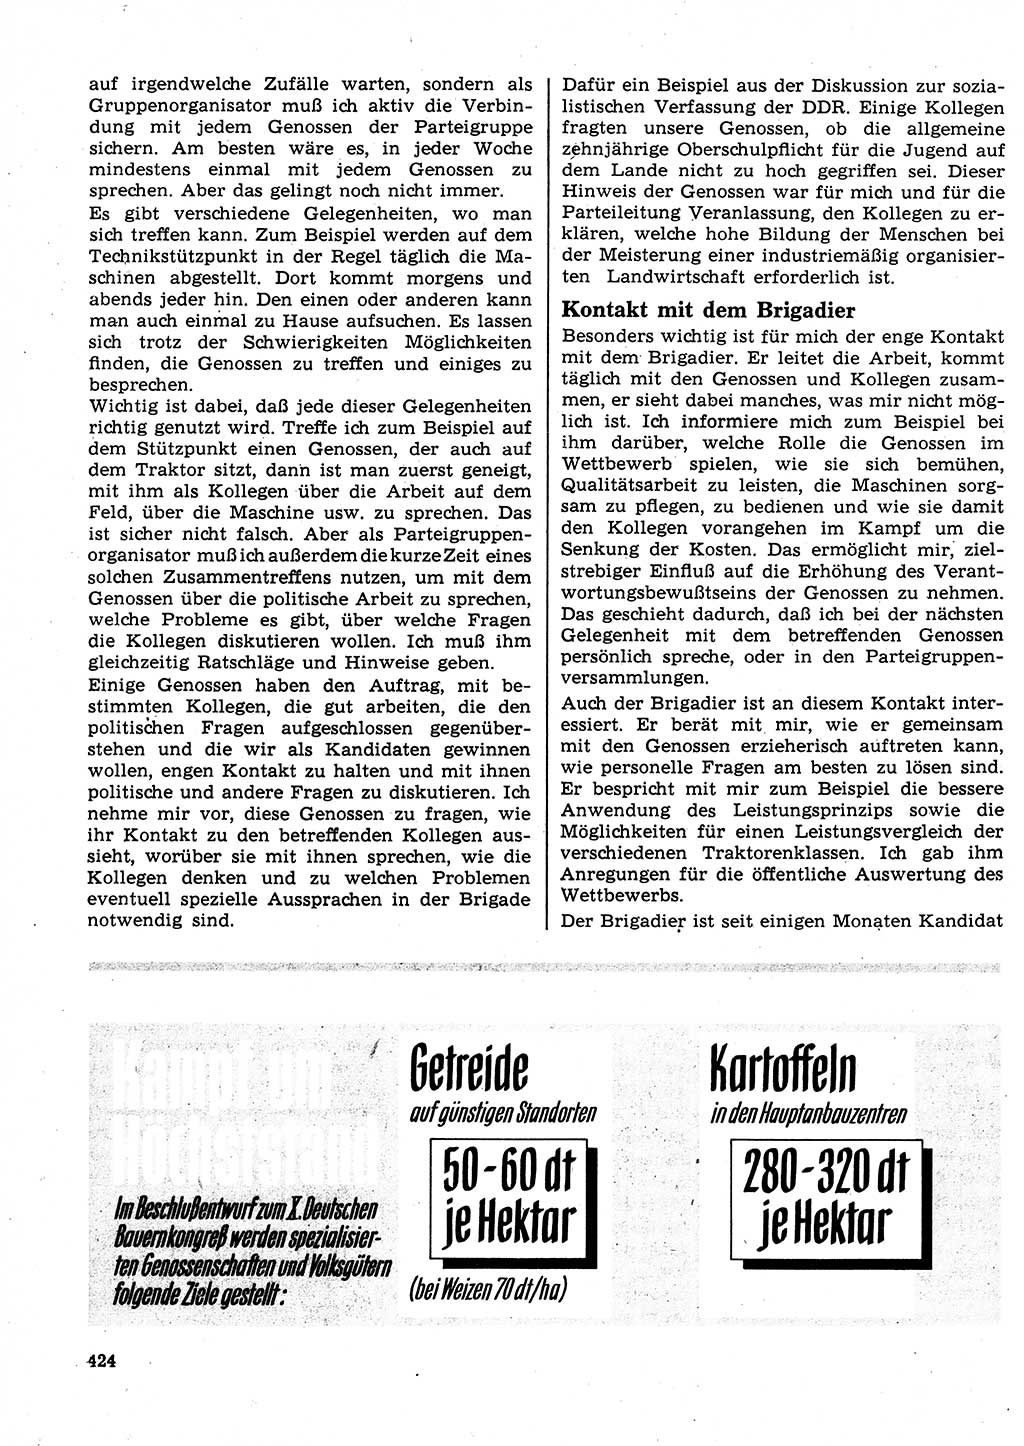 Neuer Weg (NW), Organ des Zentralkomitees (ZK) der SED (Sozialistische Einheitspartei Deutschlands) für Fragen des Parteilebens, 23. Jahrgang [Deutsche Demokratische Republik (DDR)] 1968, Seite 424 (NW ZK SED DDR 1968, S. 424)